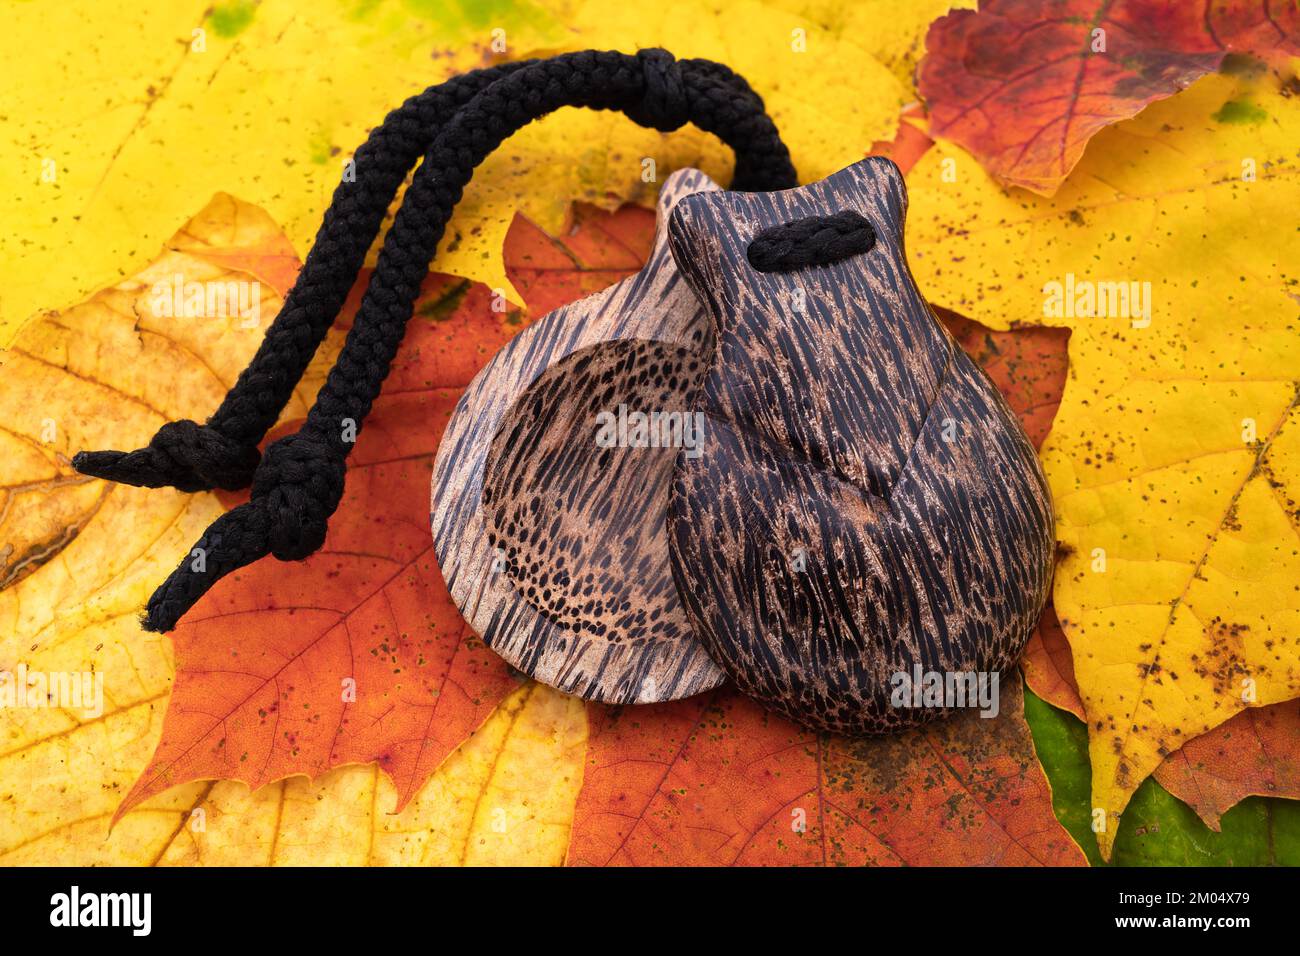 Calanets percussifs sur fond de feuilles colorées d'automne Banque D'Images